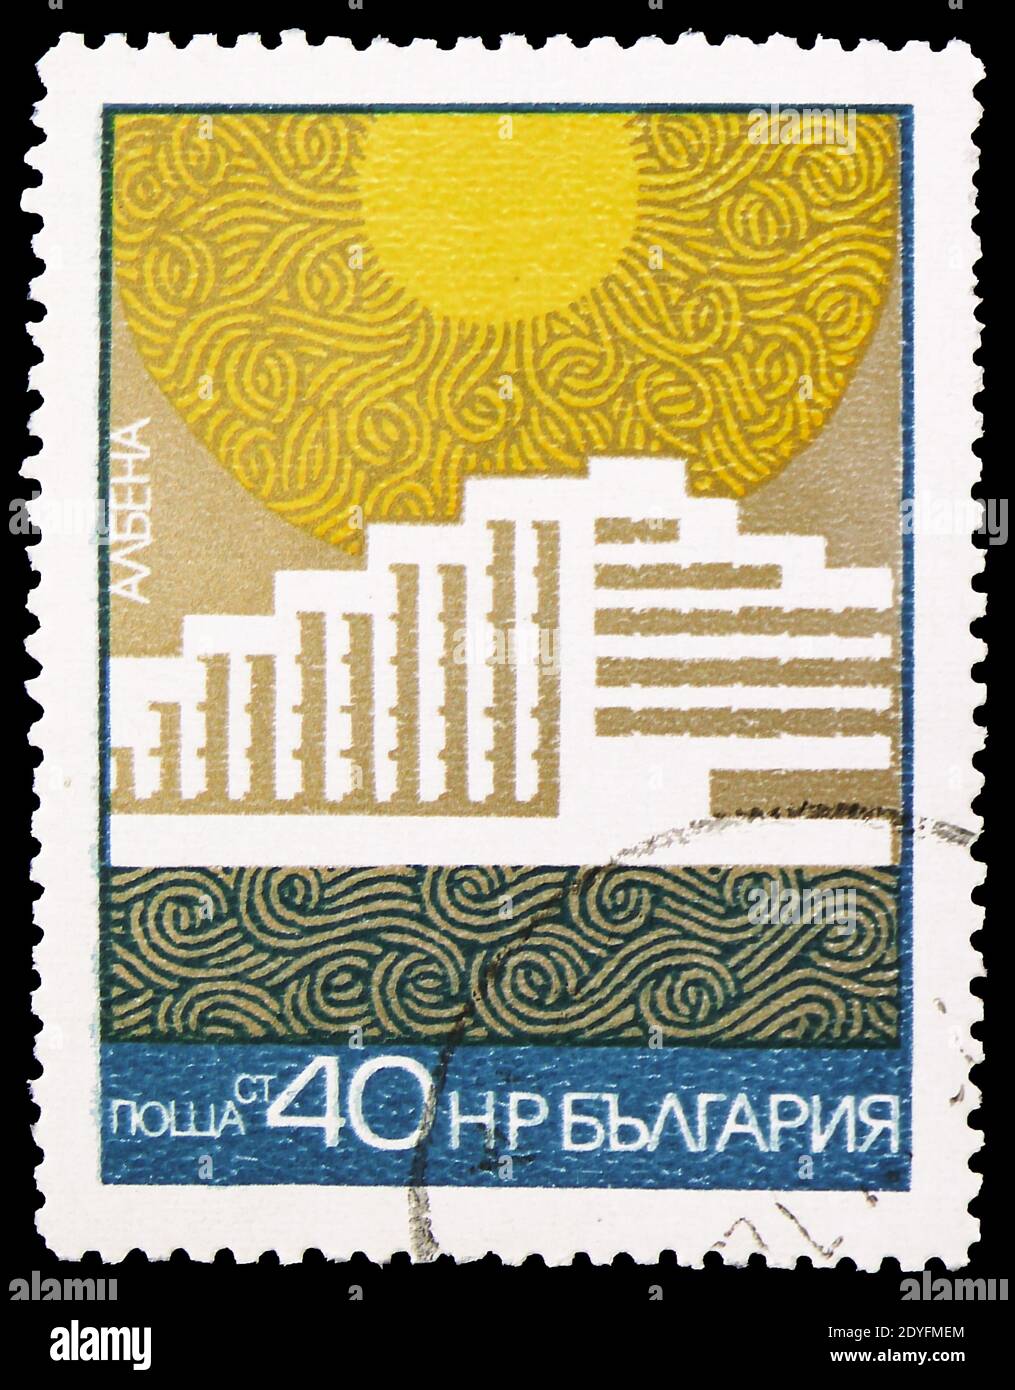 MOSKAU, RUSSLAND - 23. MÄRZ 2019: Die in Bulgarien gedruckte Briefmarke zeigt Albena, Resorts der Schwarzmeerserie, um 1972 Stockfoto